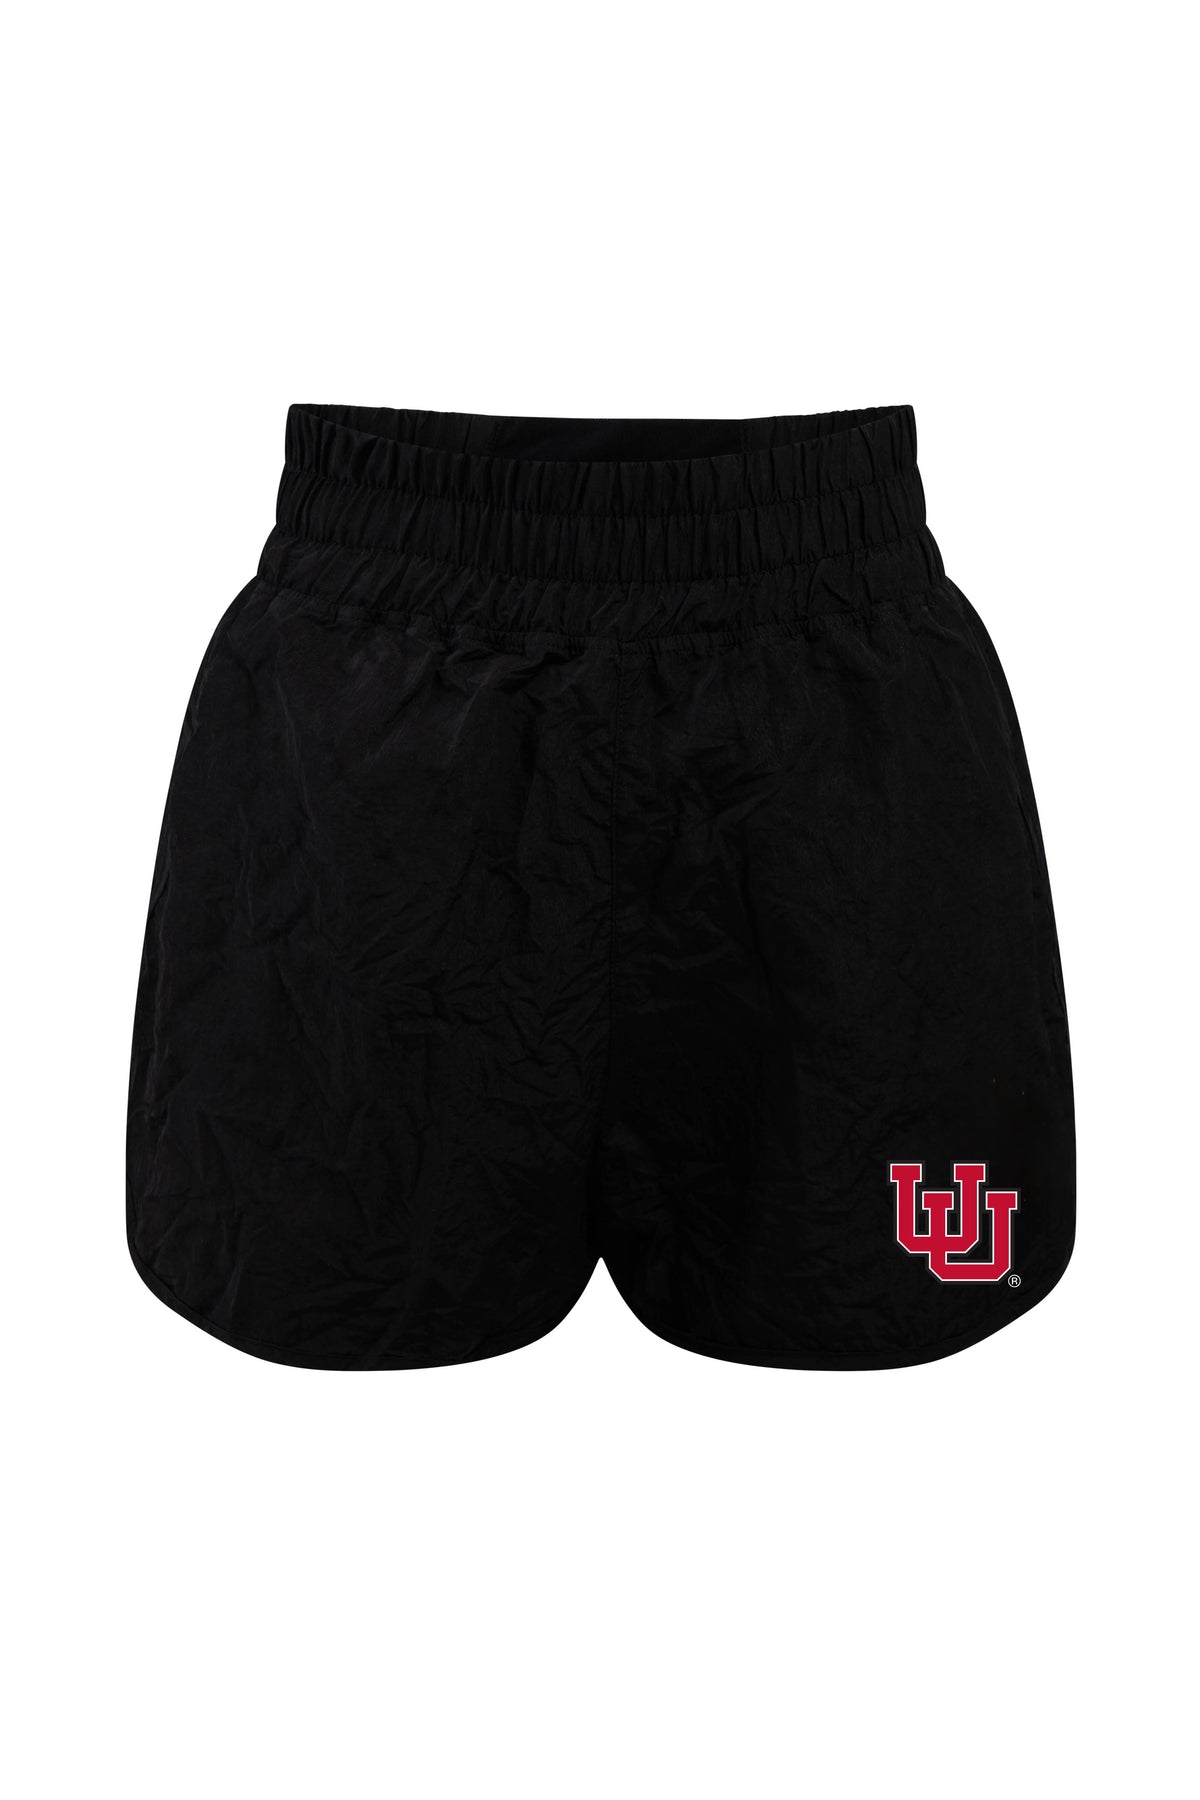 University of Utah Boxer Short